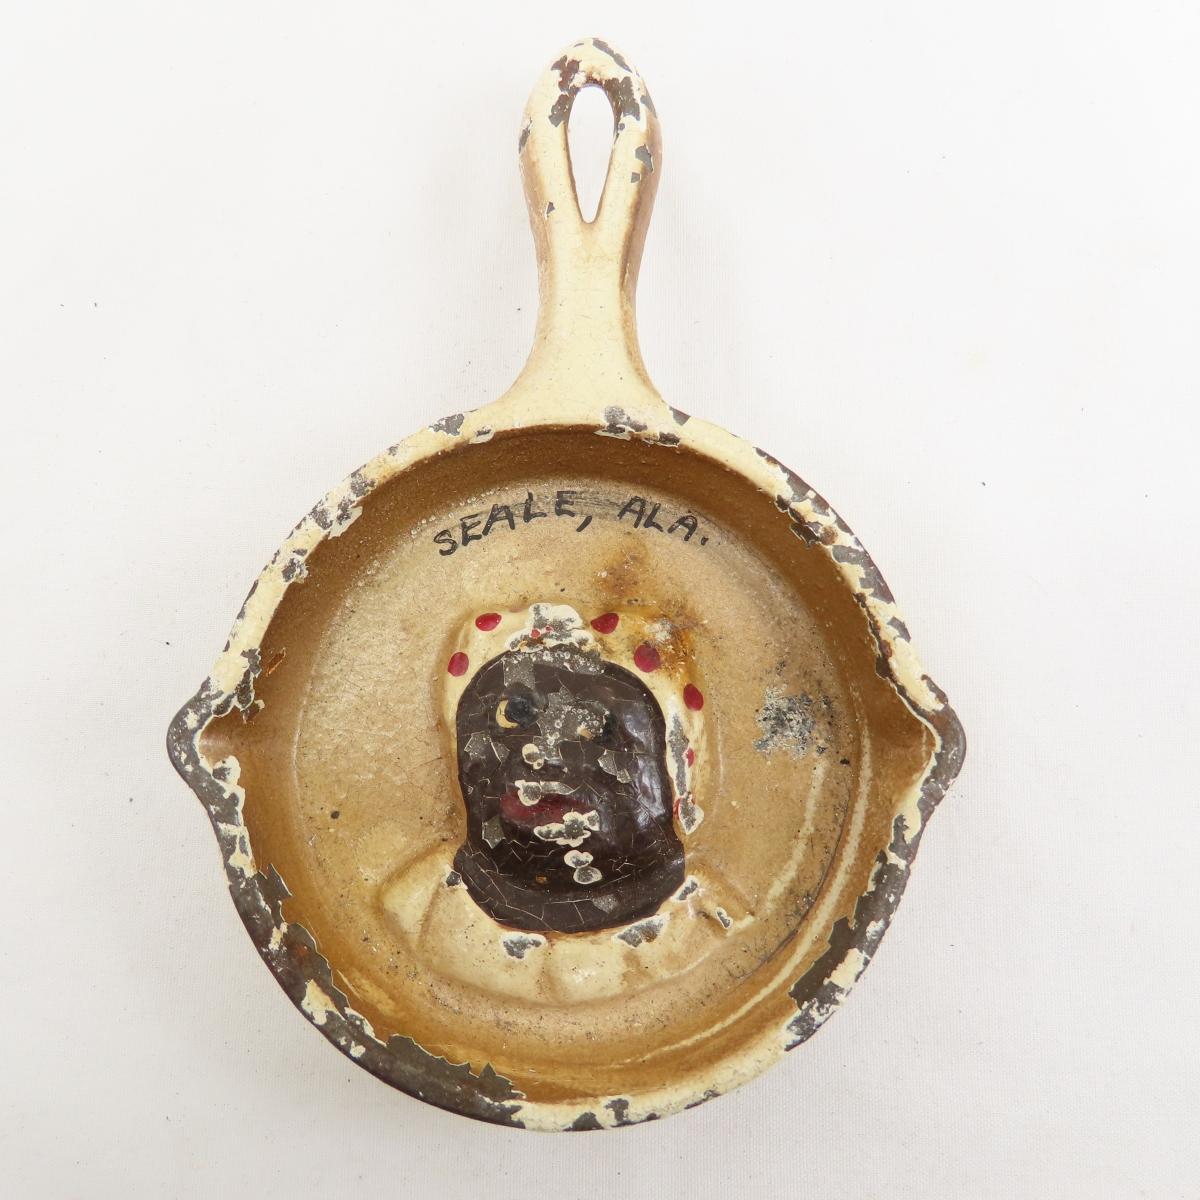 Black Americana cast iron ashtrays & bottle opener